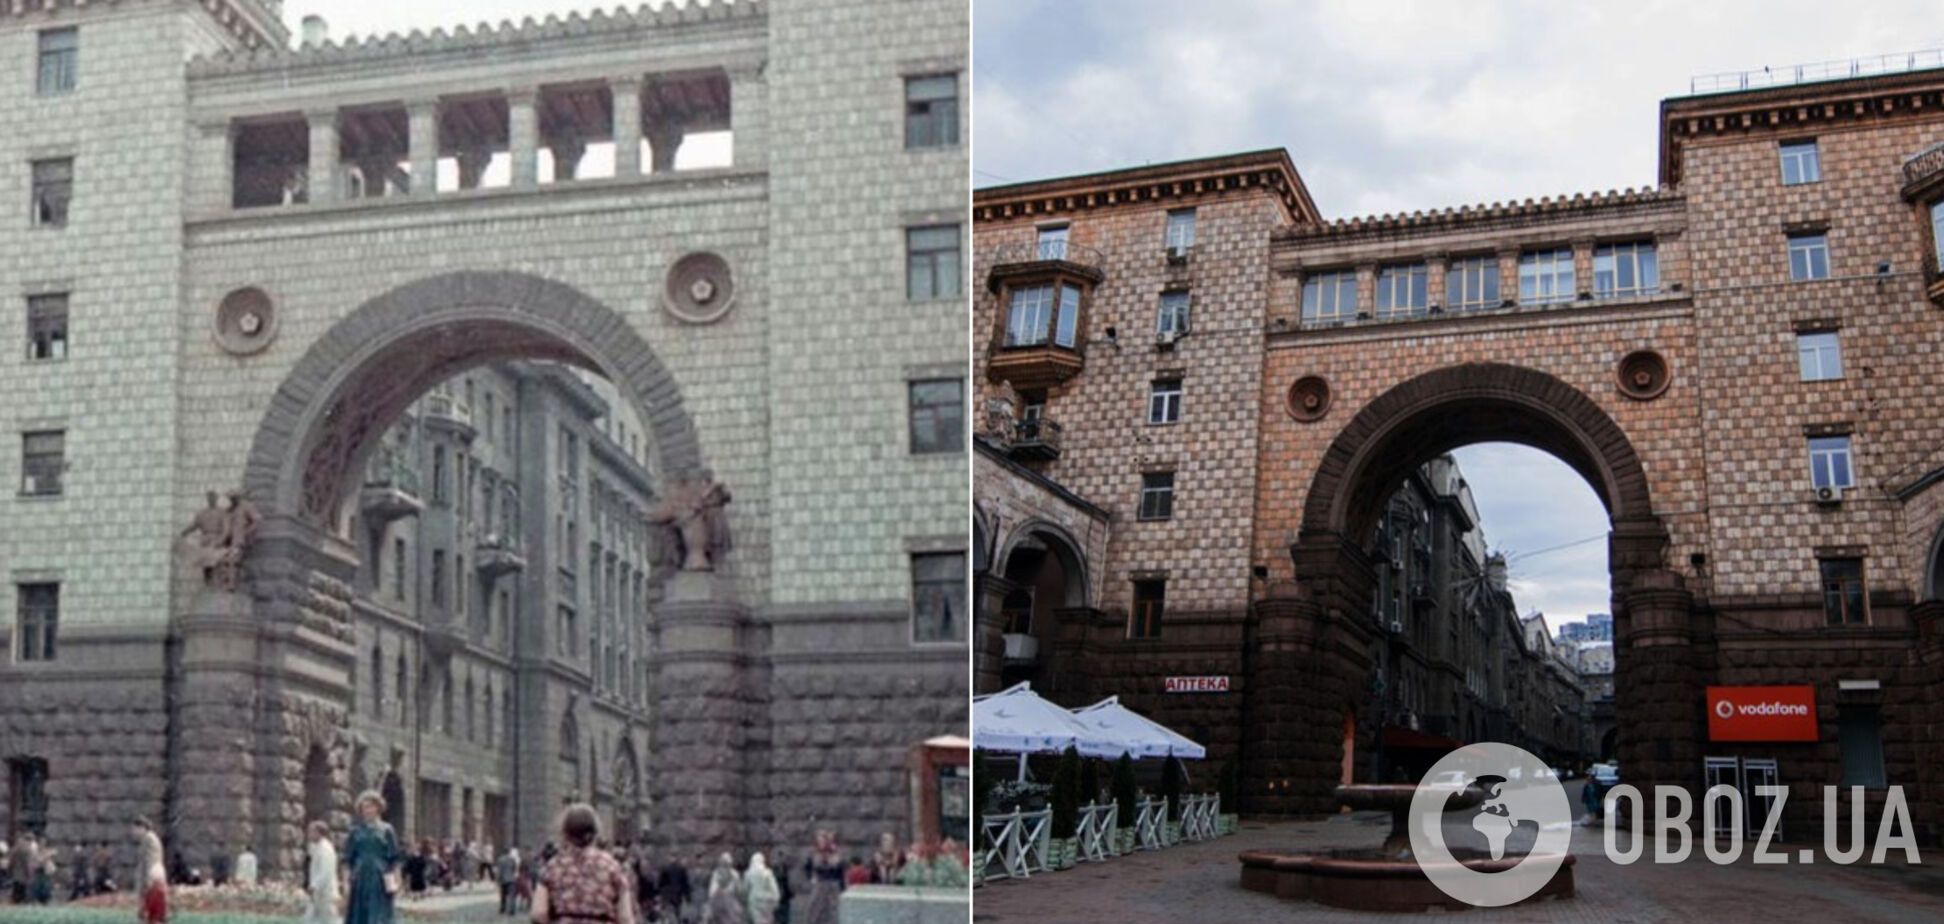 В сети сравнили старое и новое фото арки на главной улице Киева